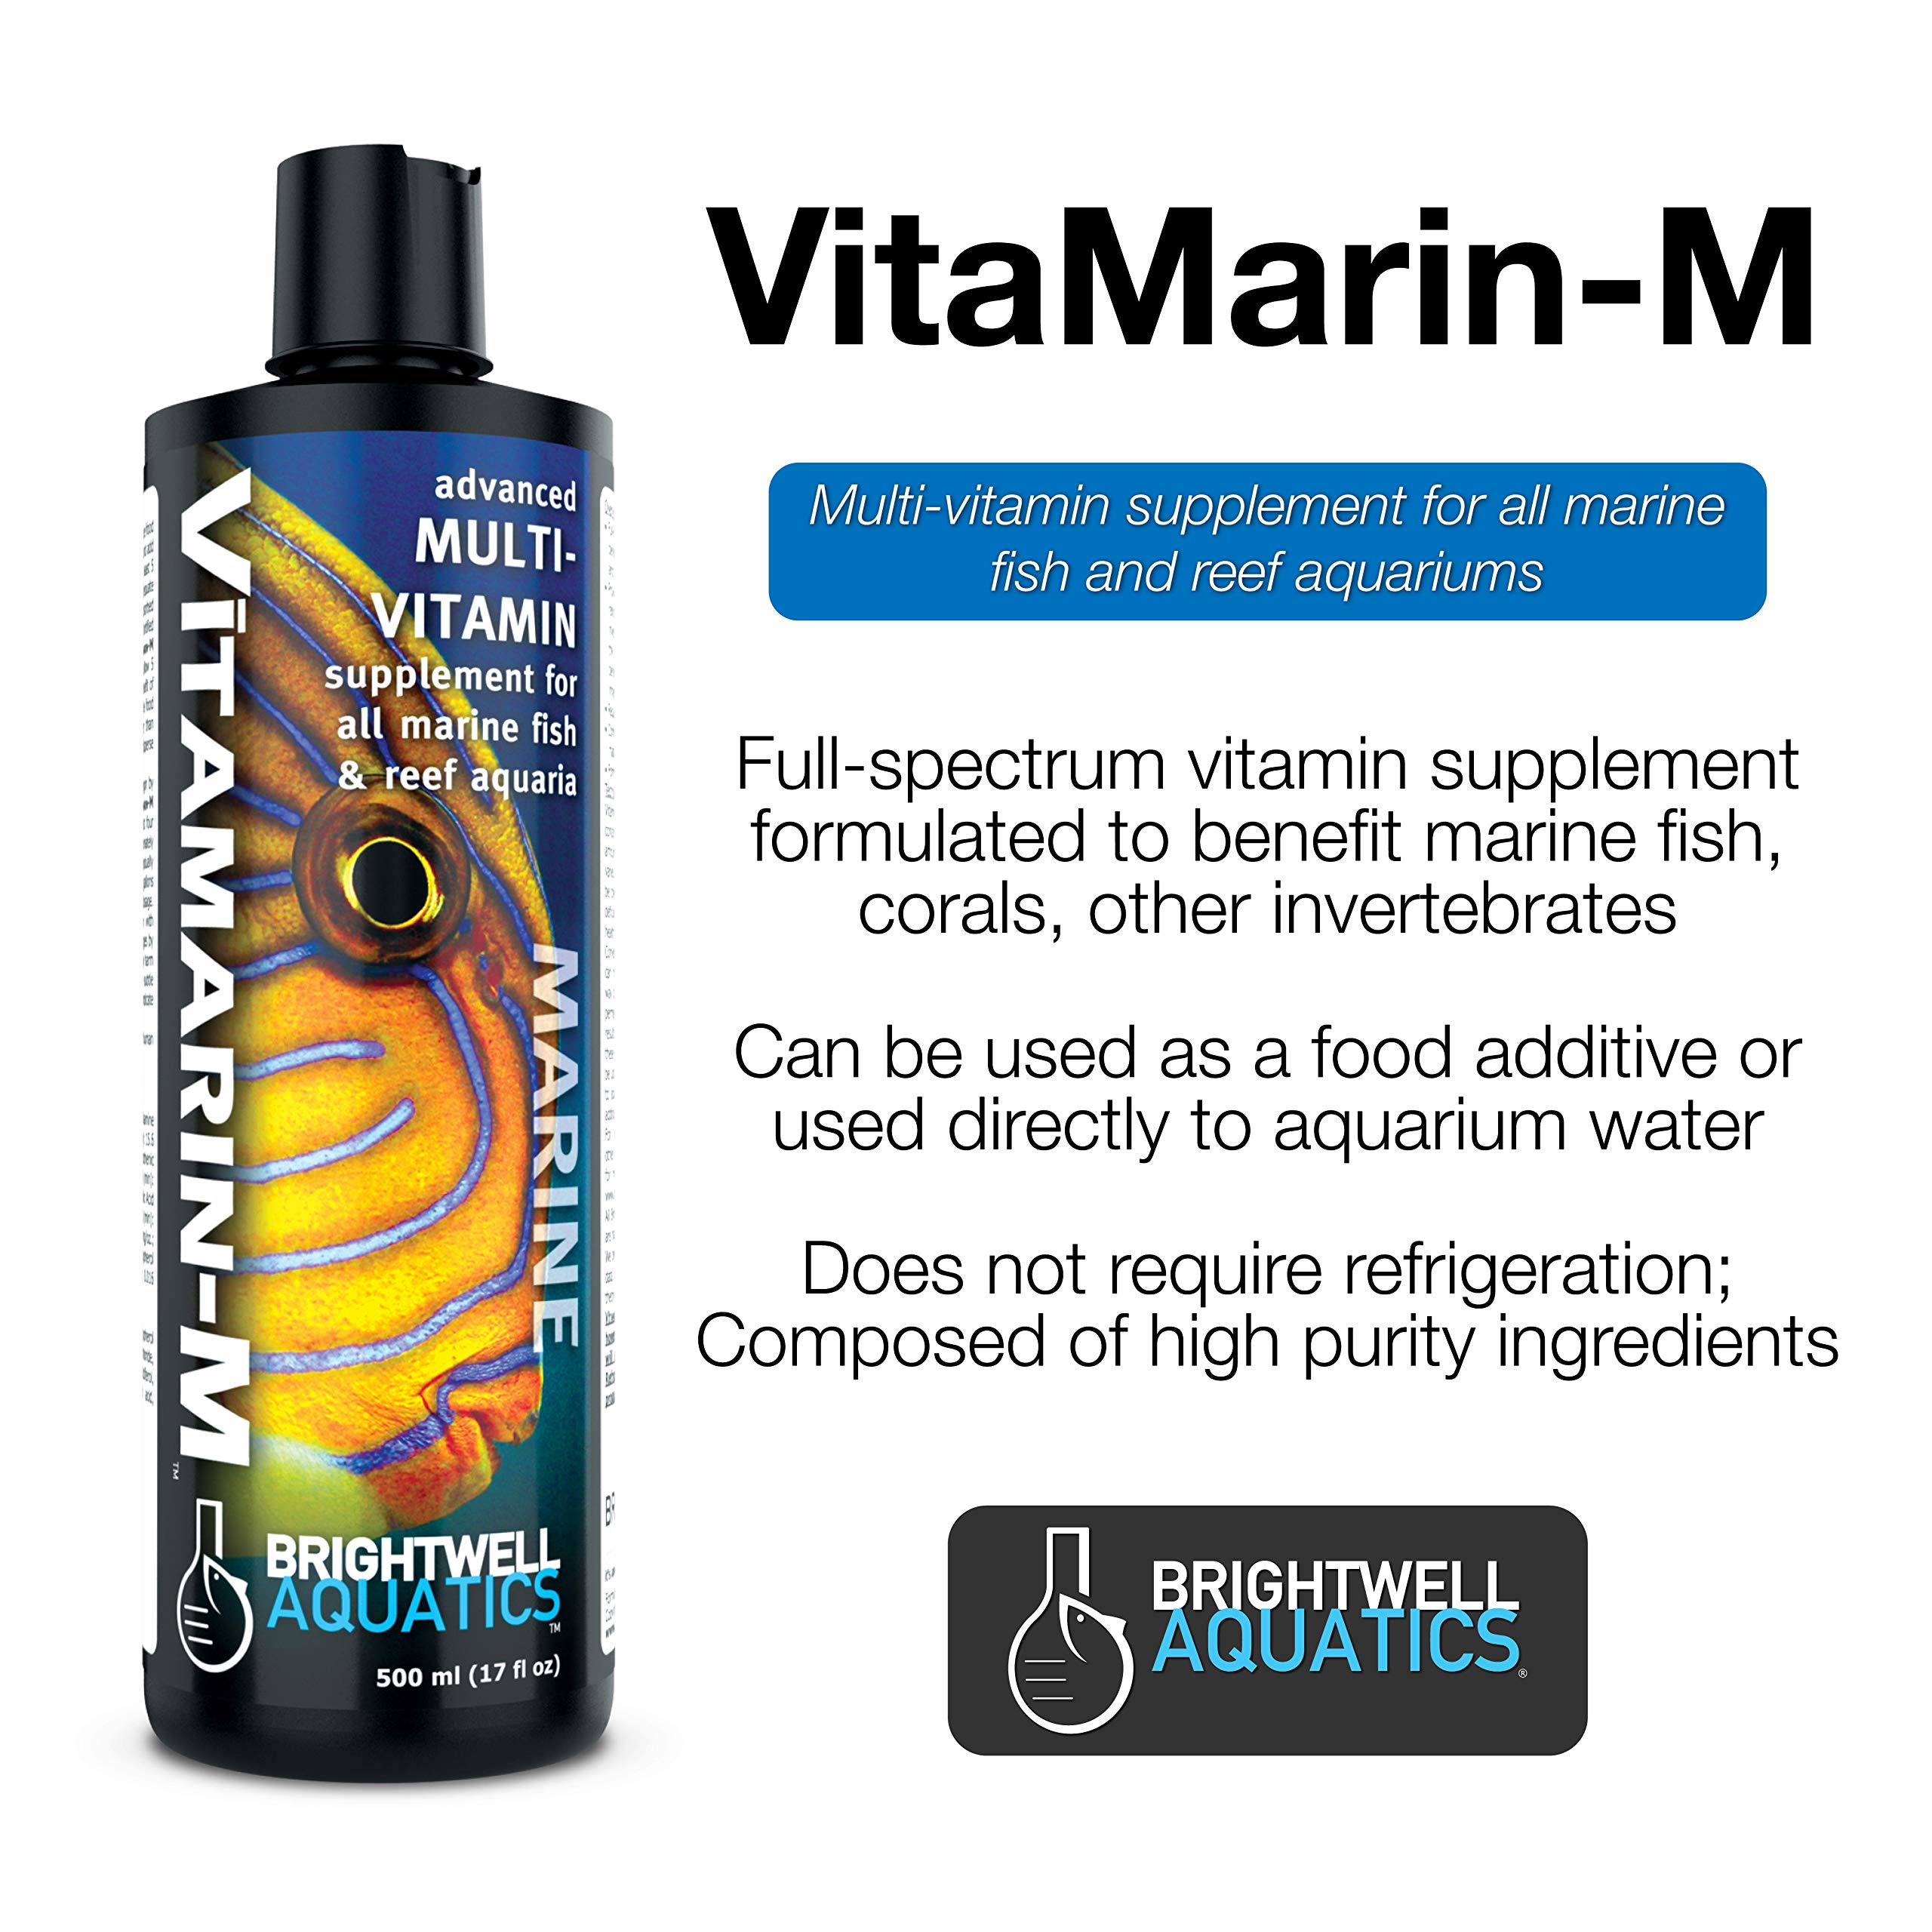 Brightwell Aquatics Vitamarin M - Liquid Multivitamin Supplement for Marine Fish Aquariums,500-ML